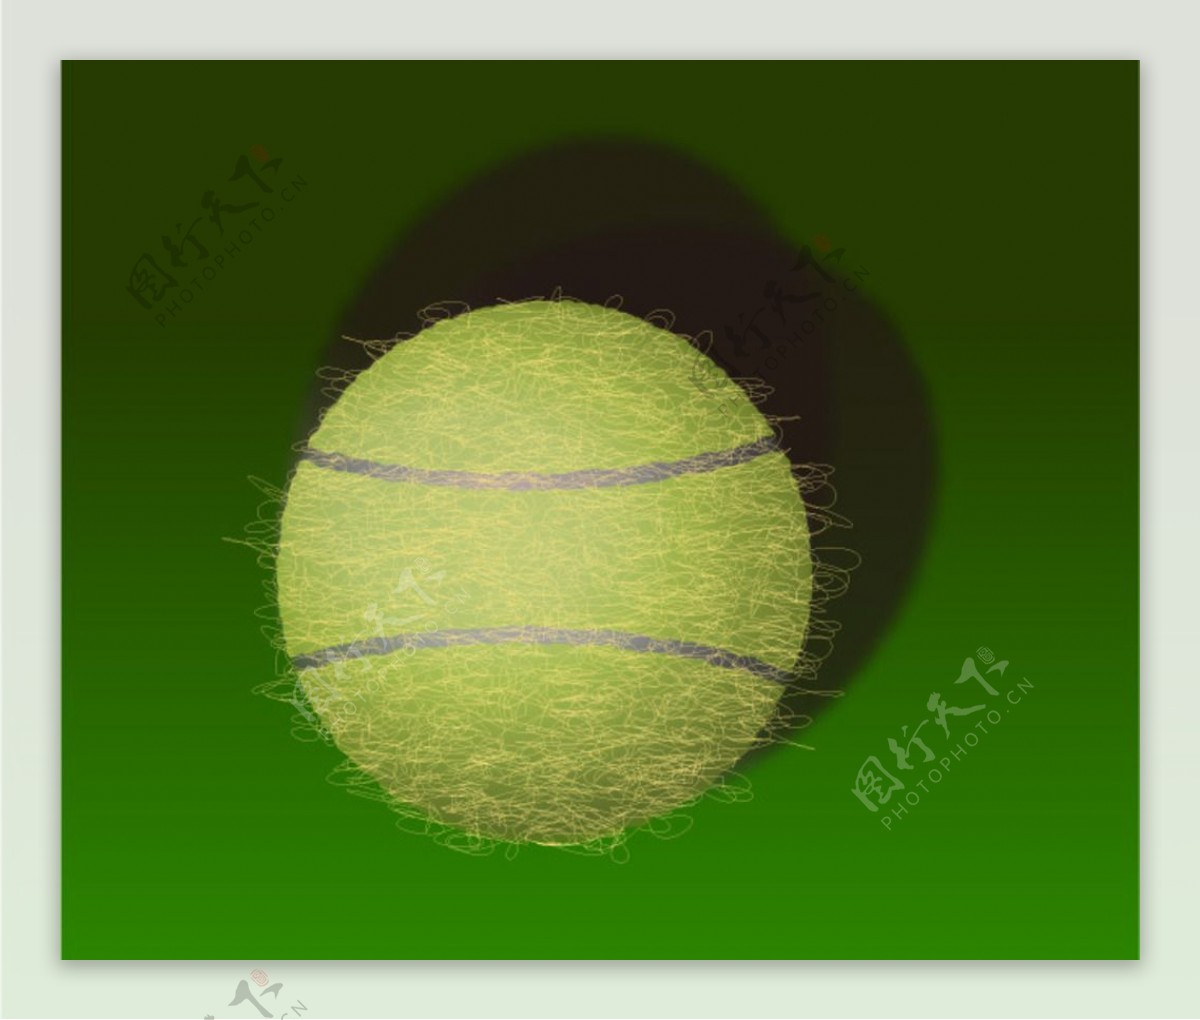 矢量网球图片